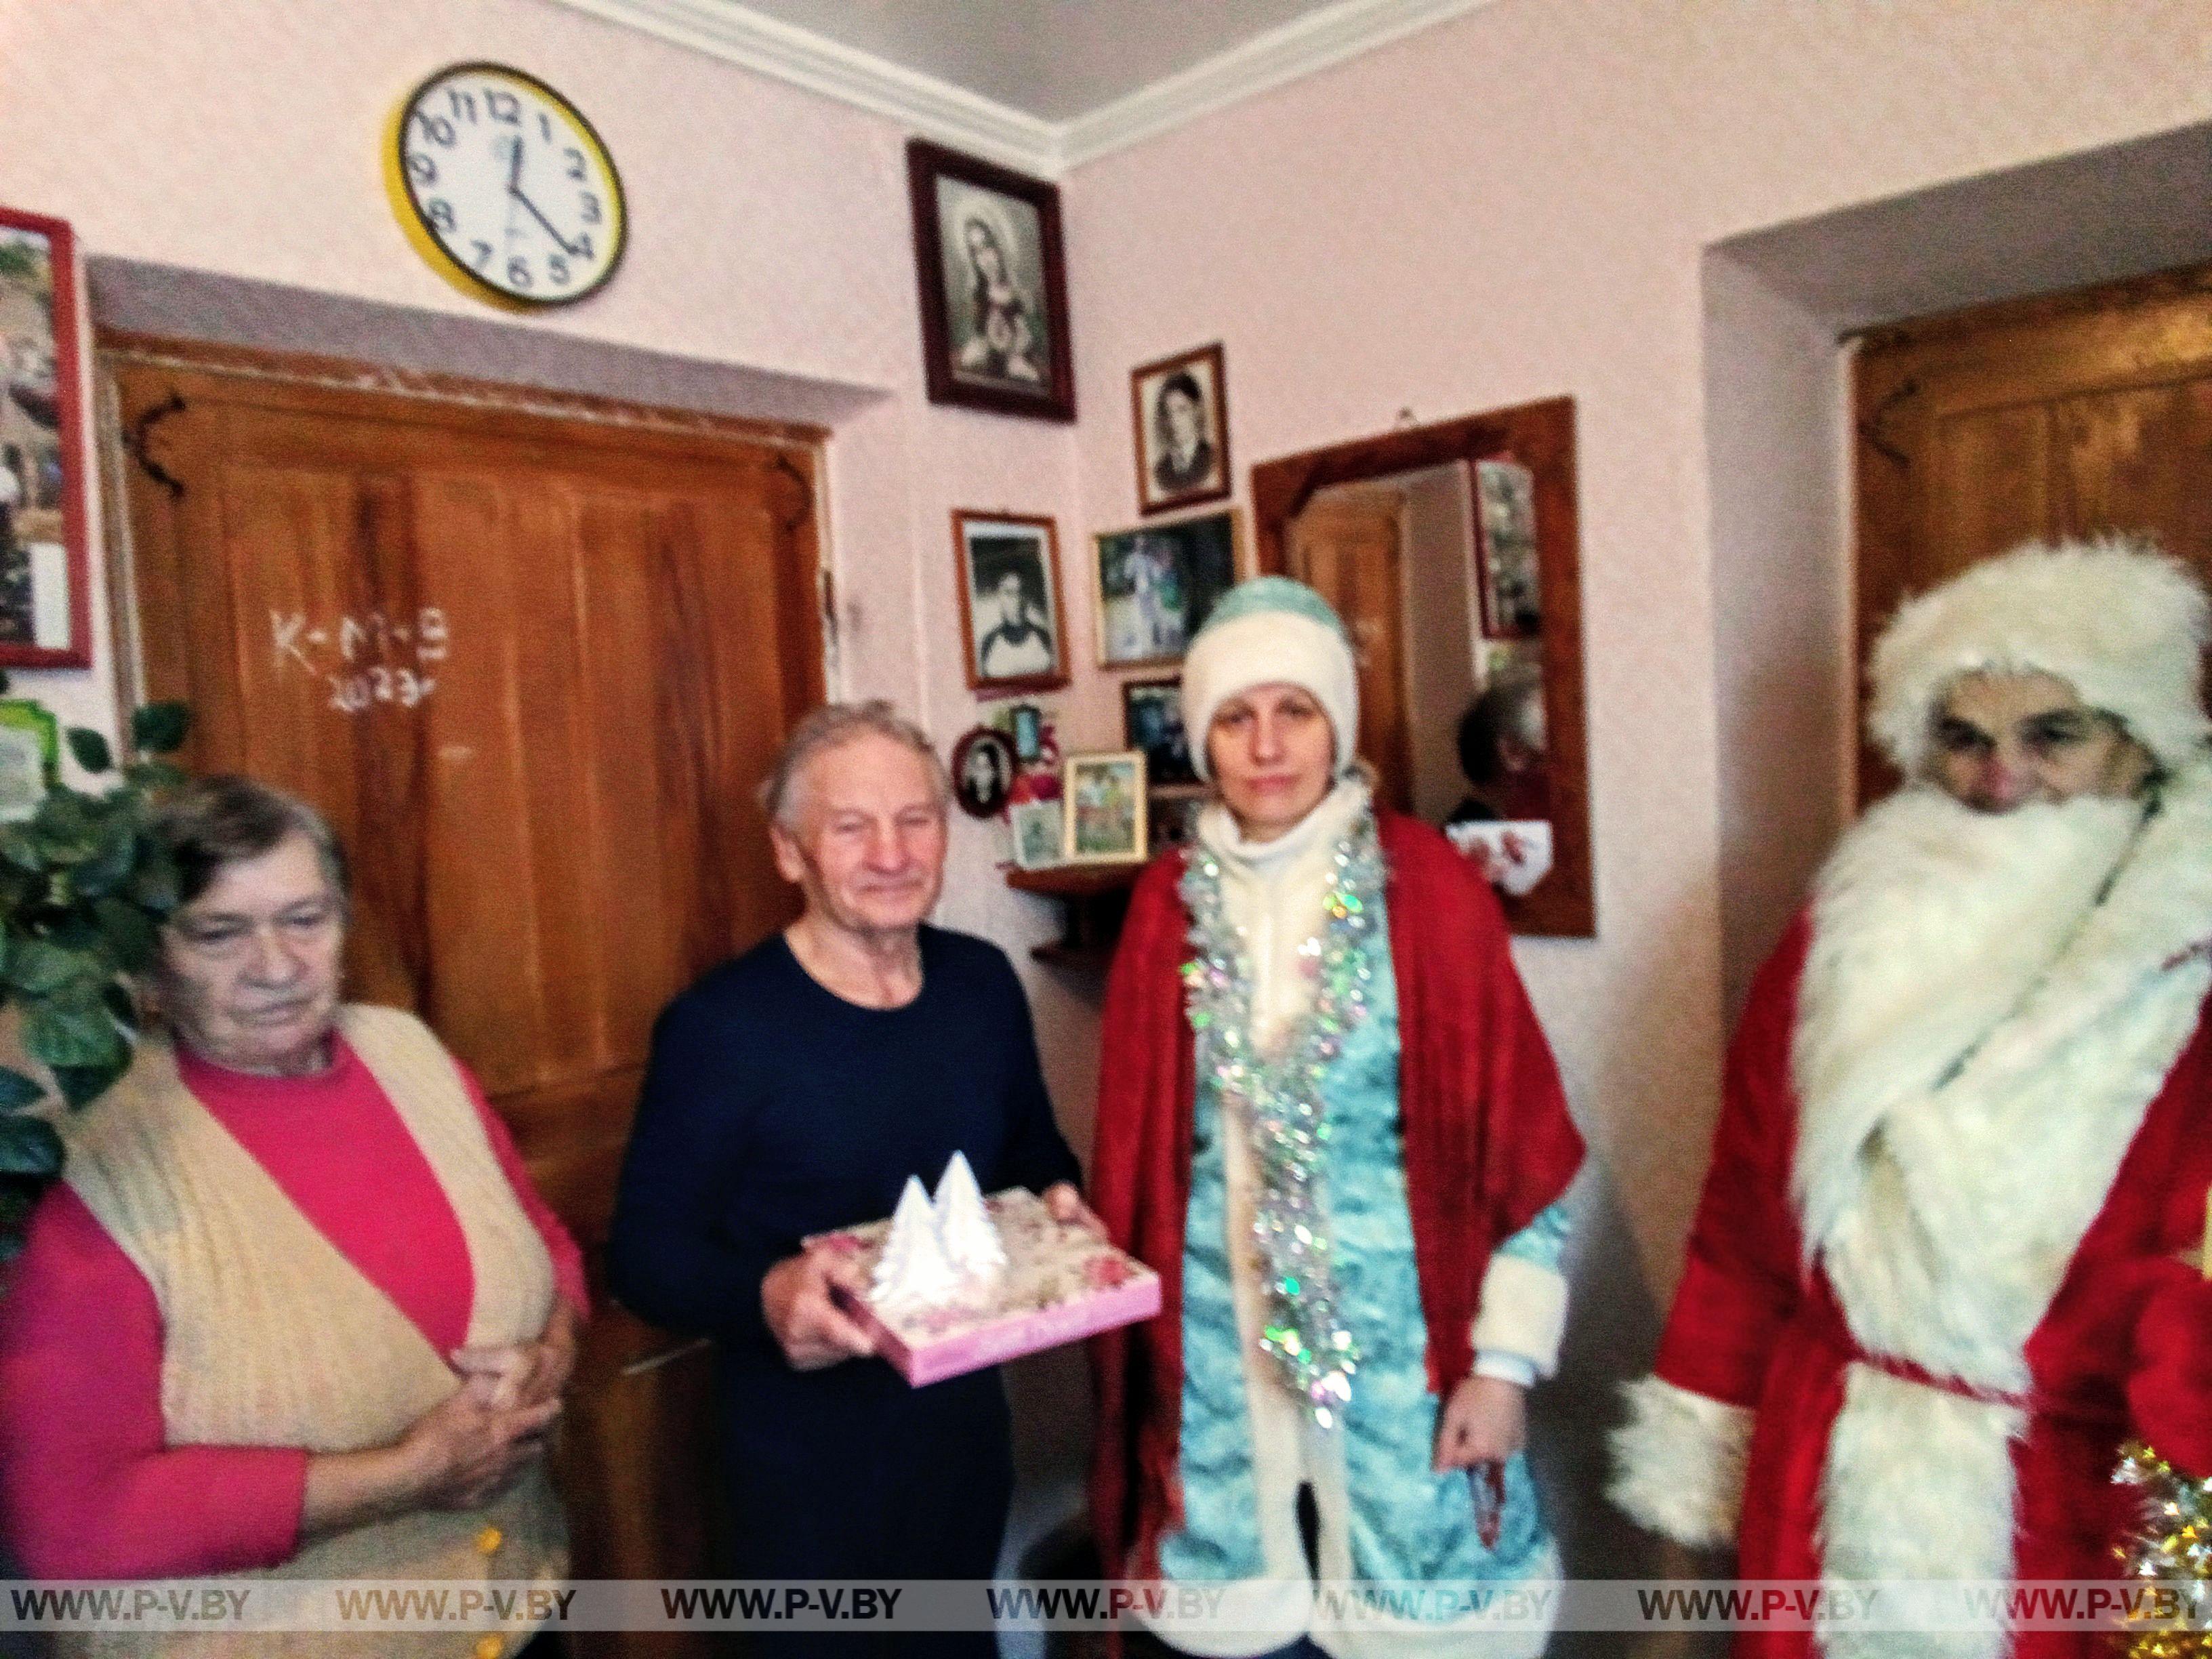 В городском поселке Логишин, «серебряные» волонтеры поздравили с наступившим Новым годом и грядущим Рождеством Христовым людей зрелого возраста